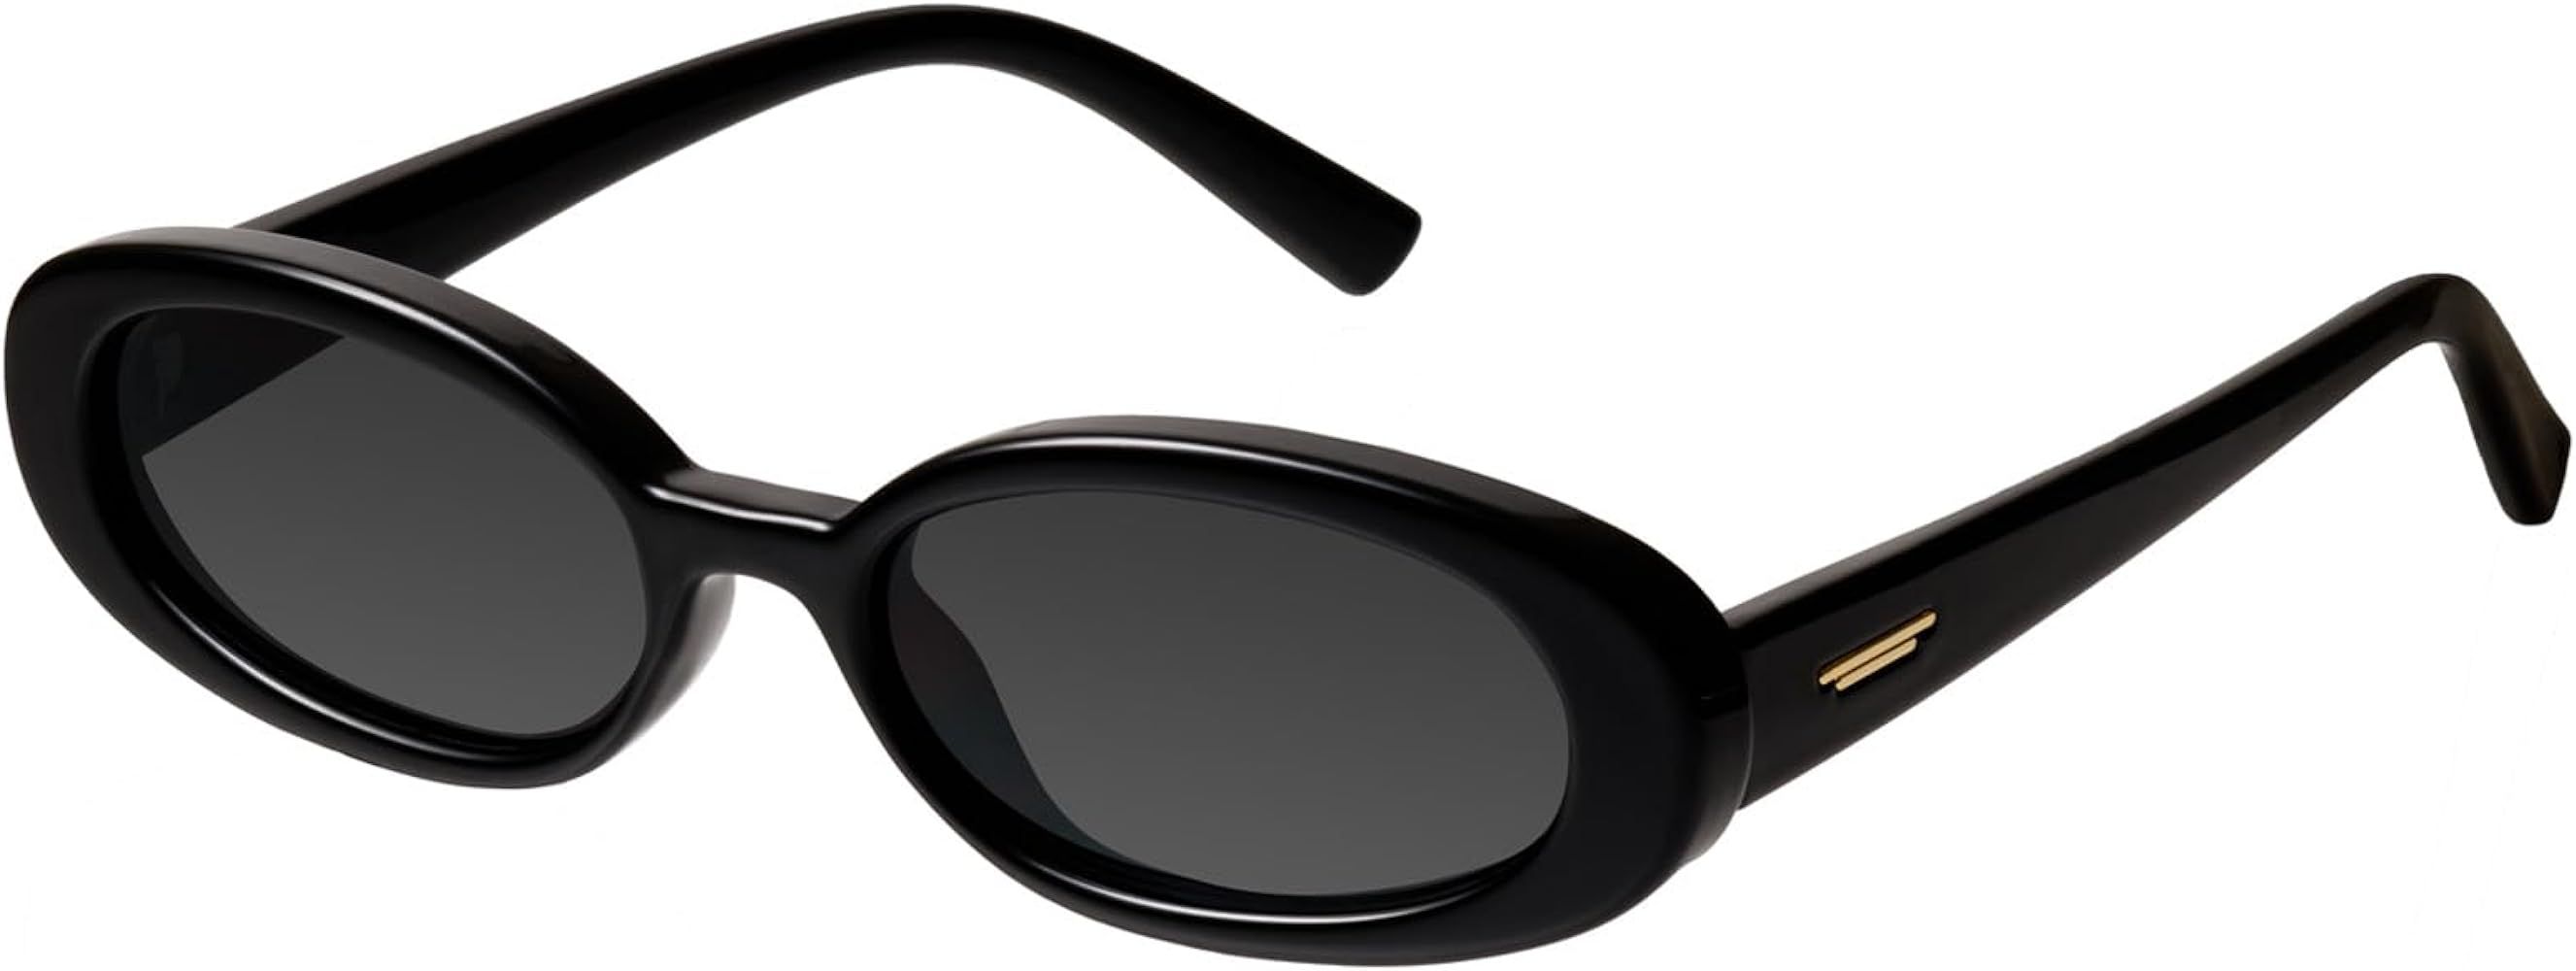 mosanana Retro Tiny Oval Sunglasses for Women with Small Face Narrow Style MS52360 | Amazon (US)